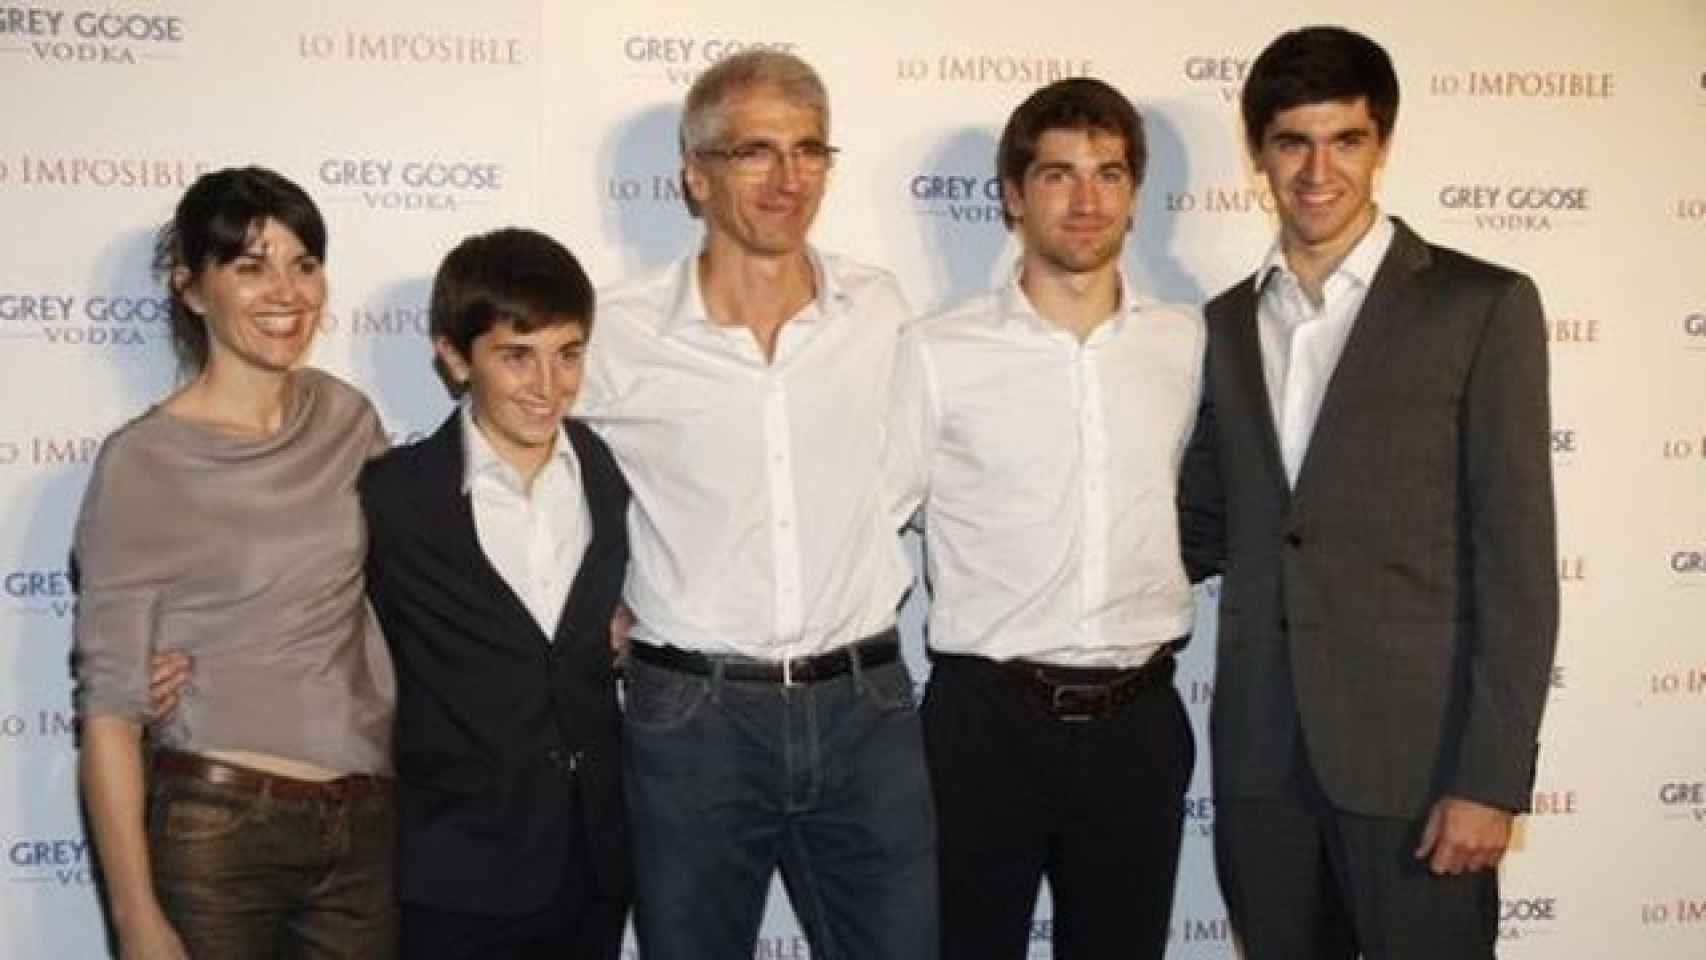 La familia Álvarez Belón al completo. De izquierda a derecha: María (la madre), Simón (el pequeño), Enrique (el padre), Lucas (el mayor) y Tomás.